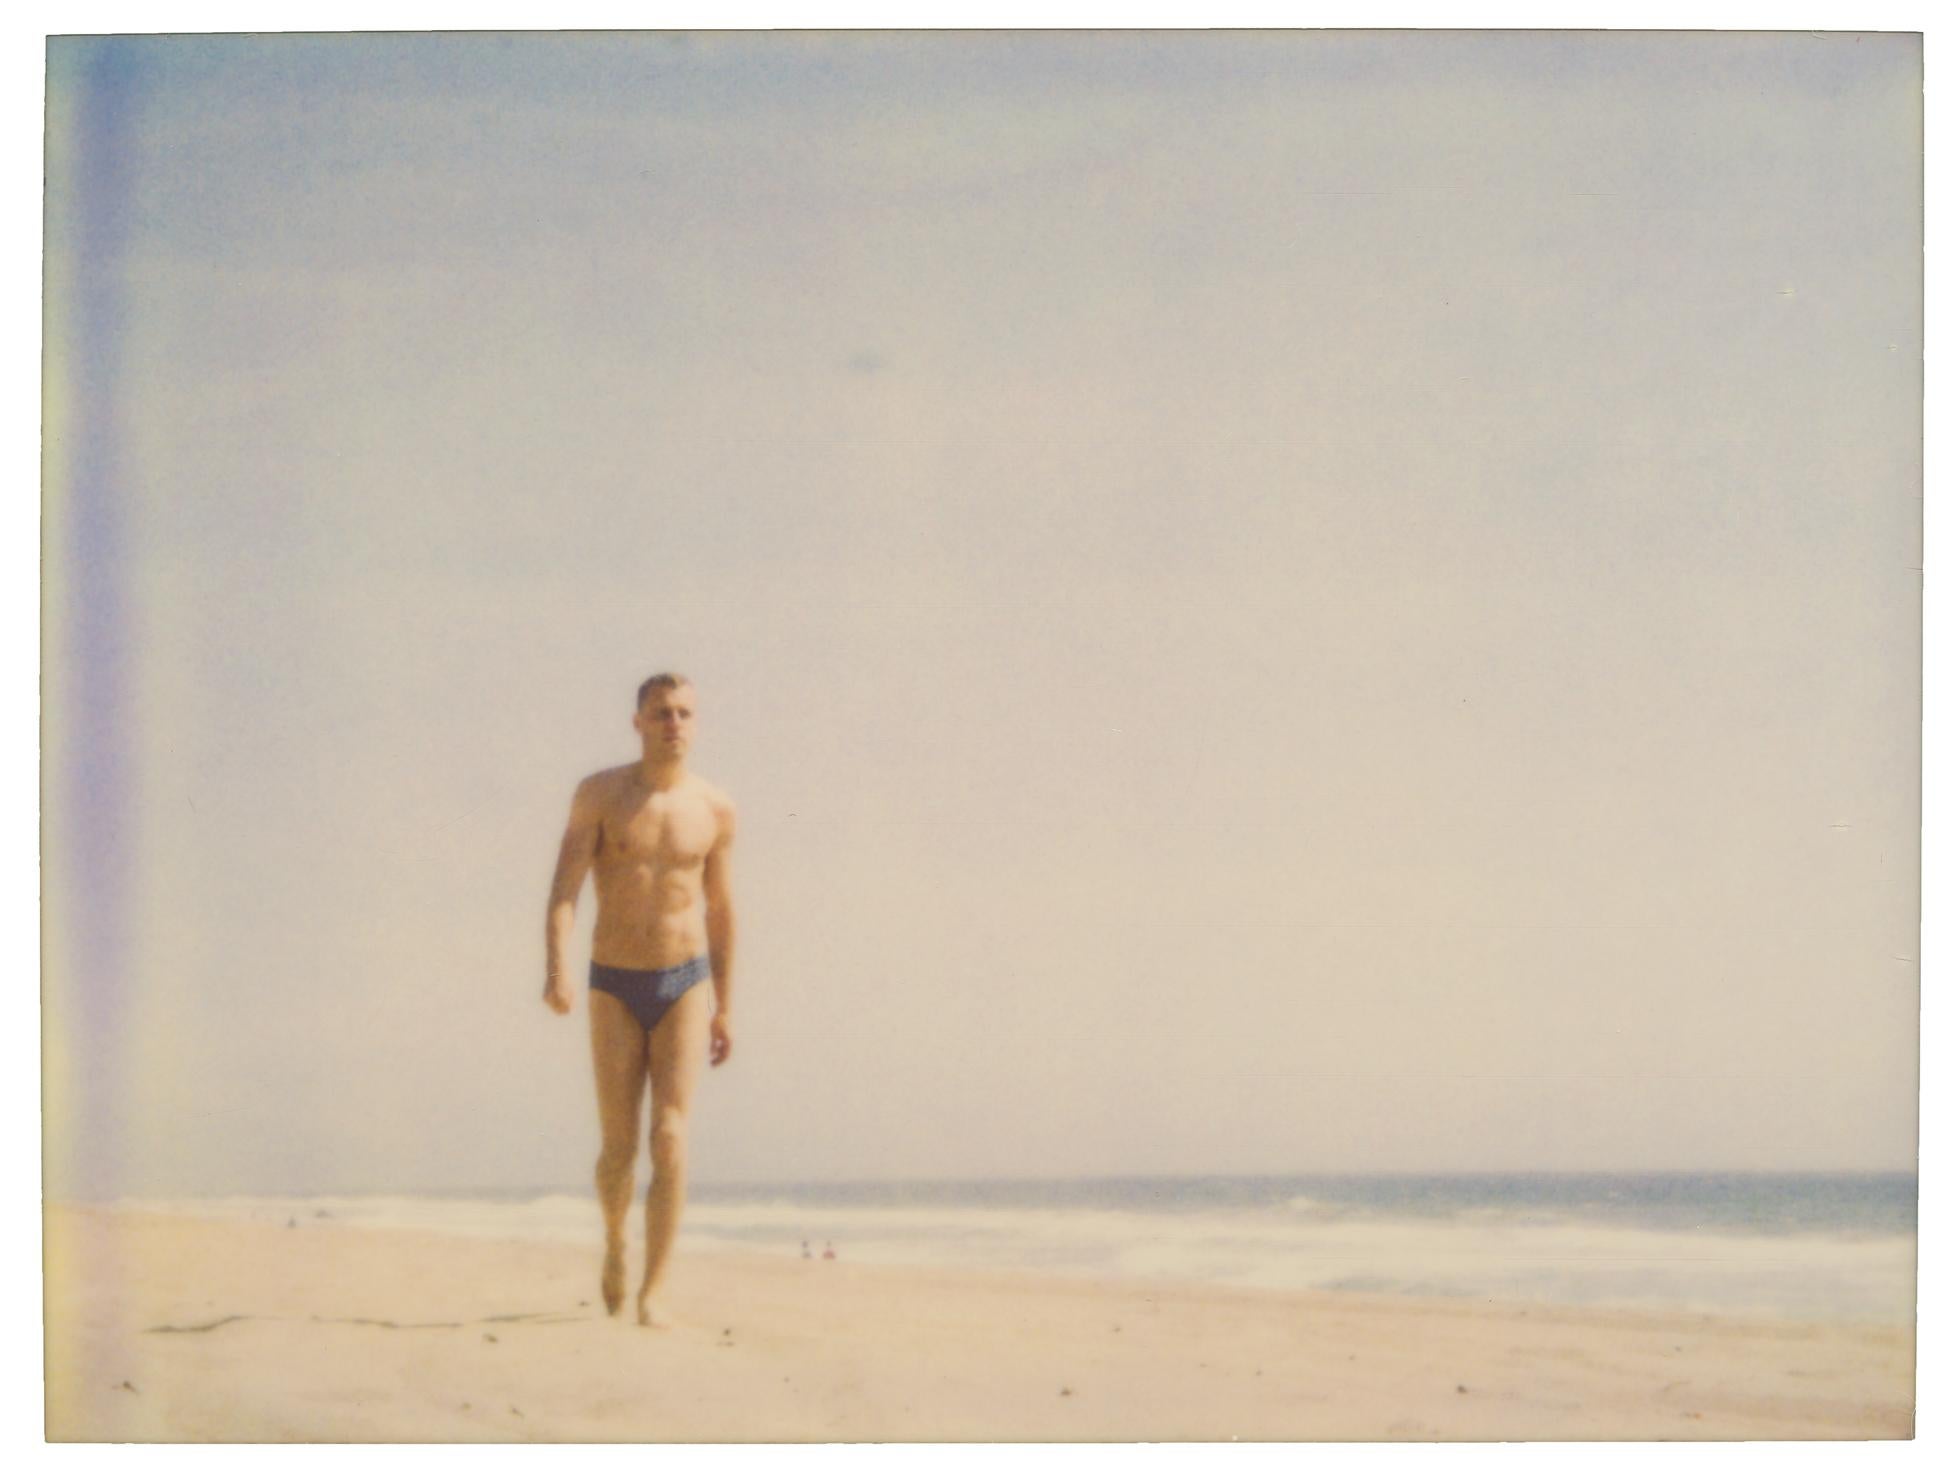 Stefanie Schneider Color Photograph - Man walking in Distance (Zuma Beach) - analog, vintage print